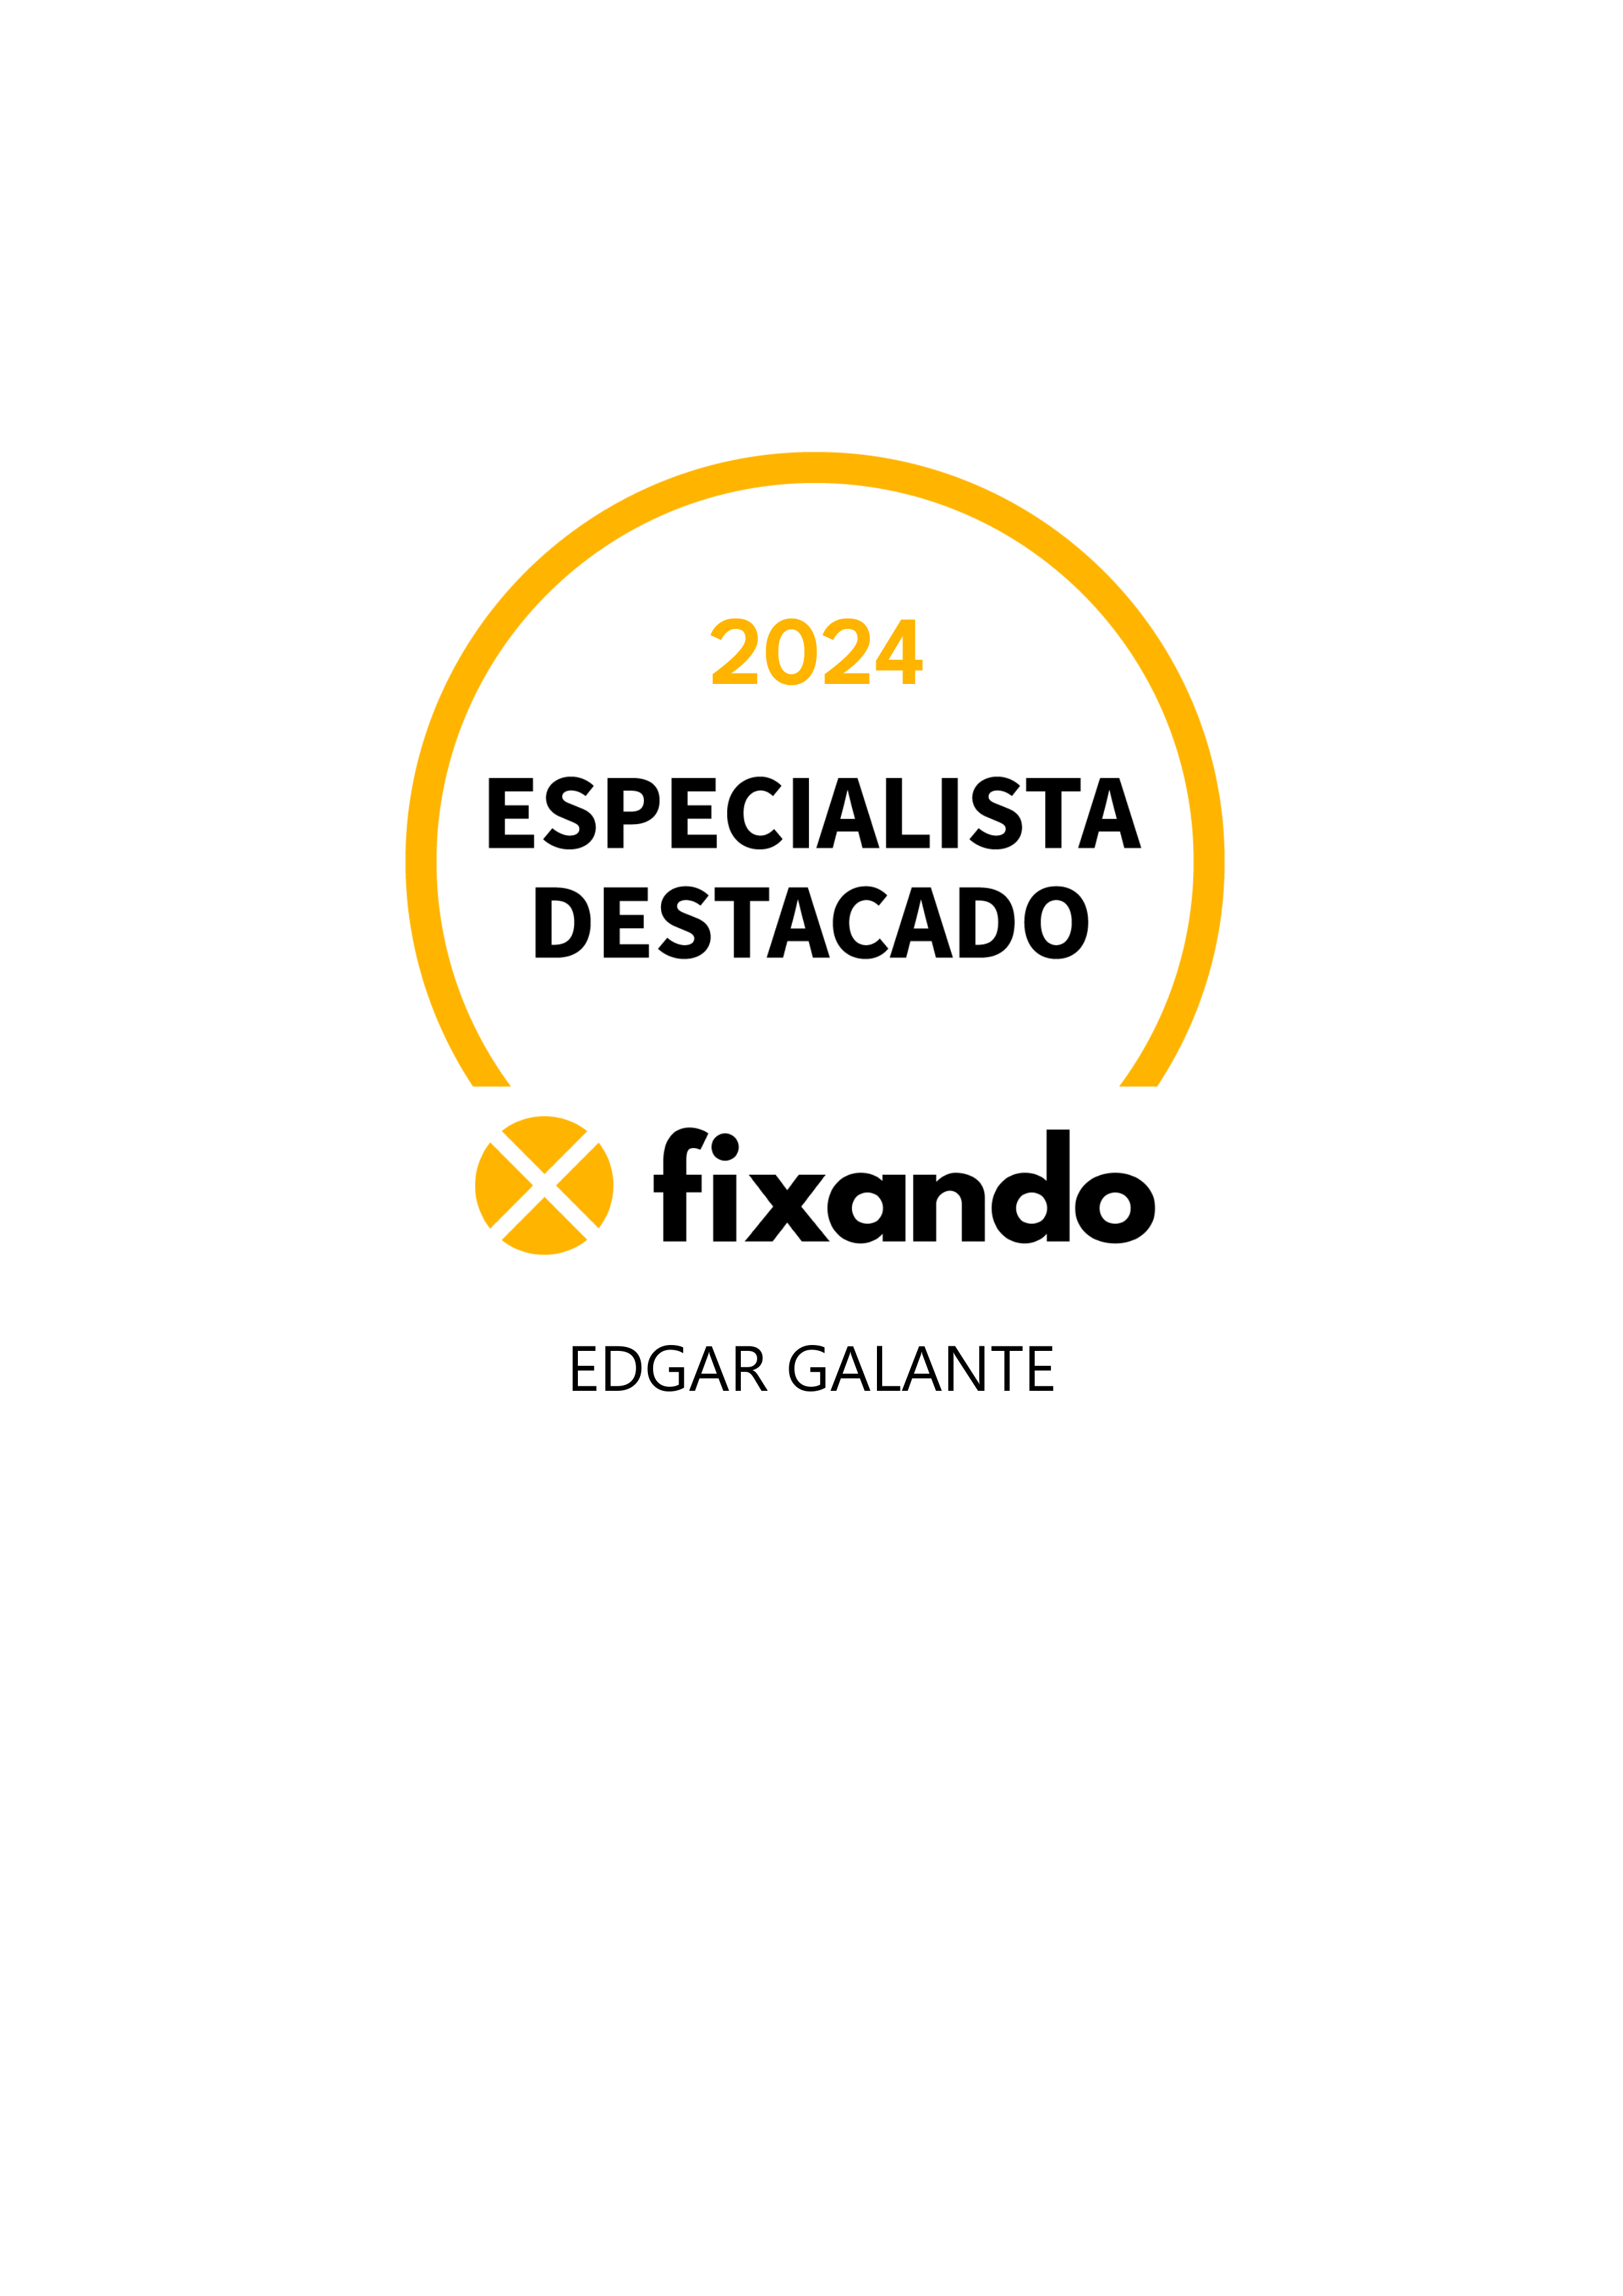 Edgar Galante - Castelo Branco - Serviço de Topografia